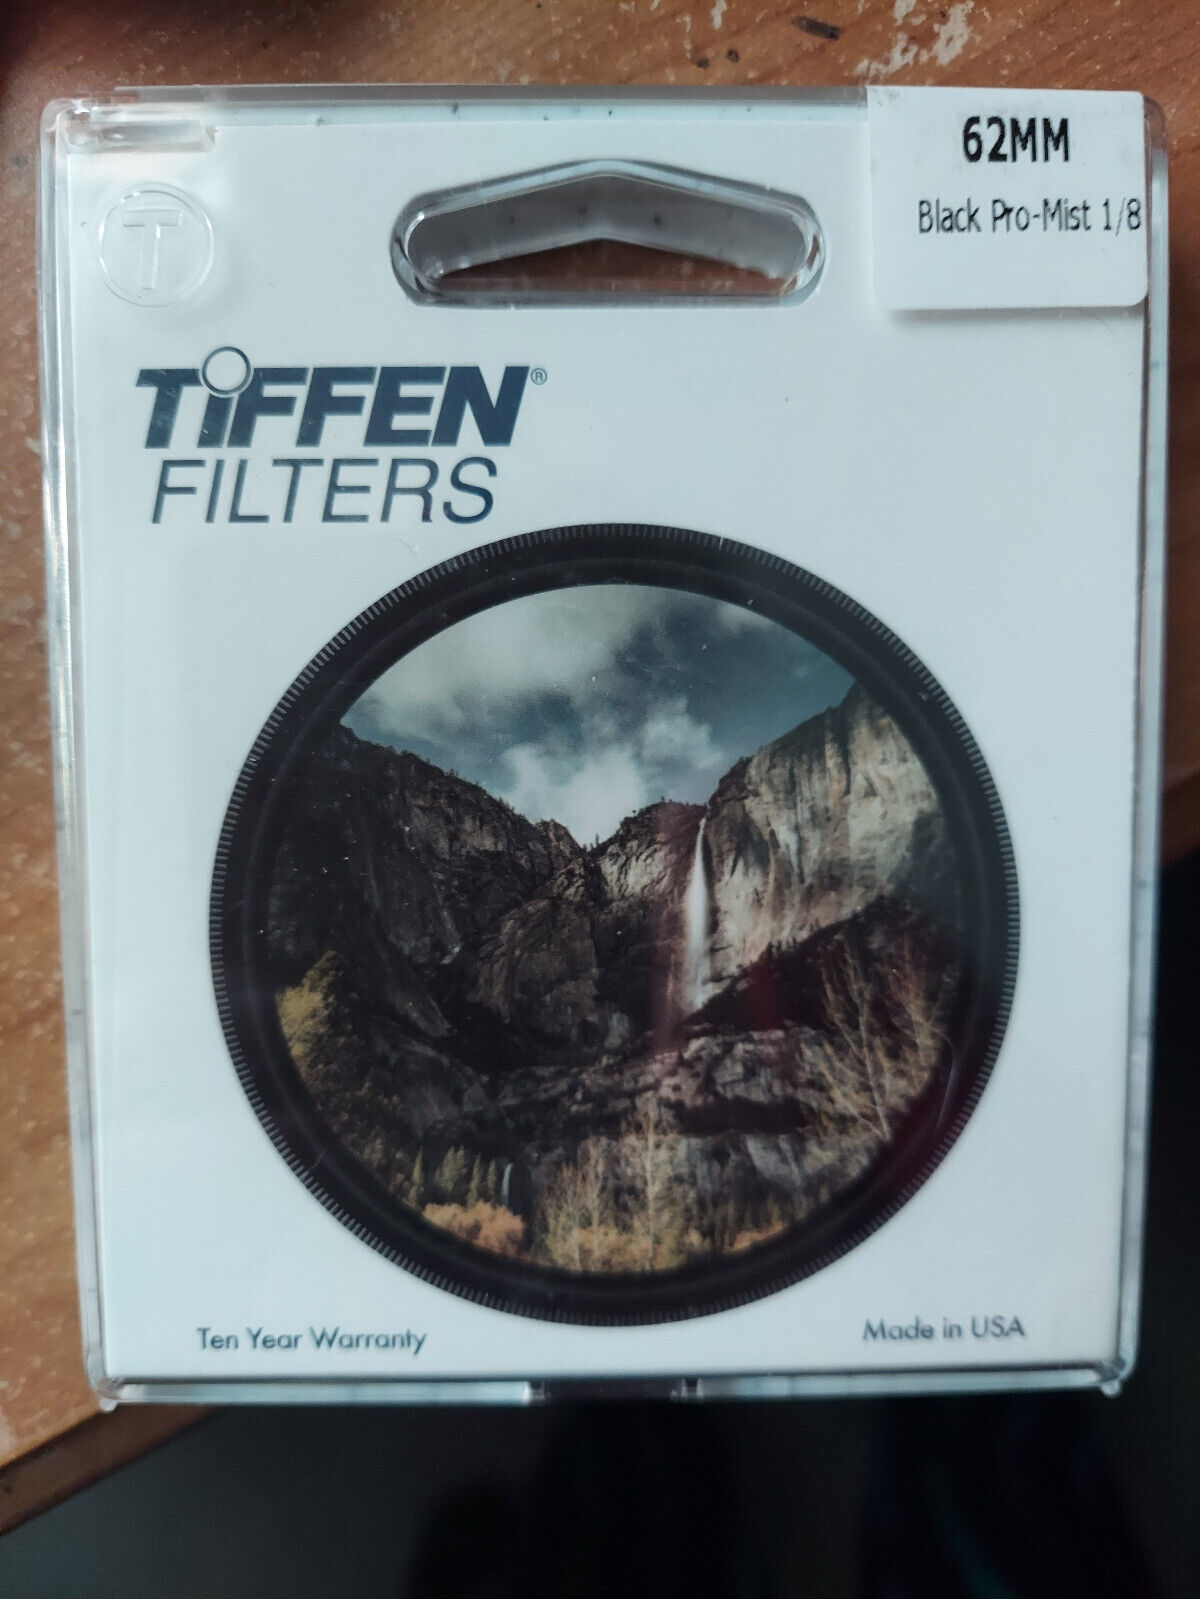 Brand New Tiffen Filter 62mm Black Pro-Mist 1/8  Still Sealed - $49.99